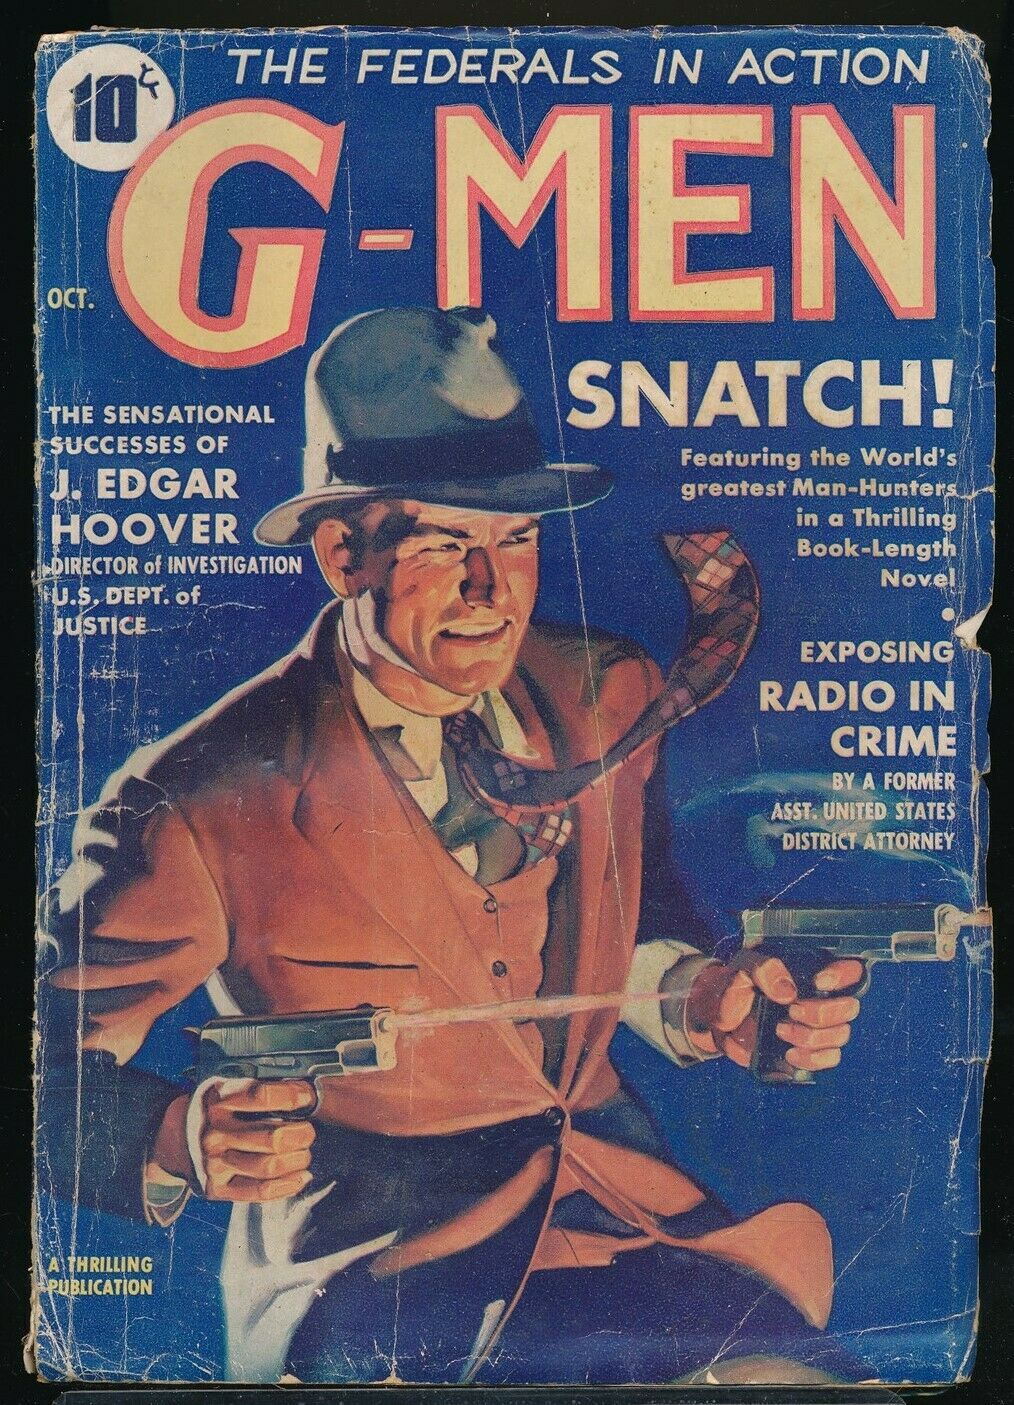 G-Men - October 1935